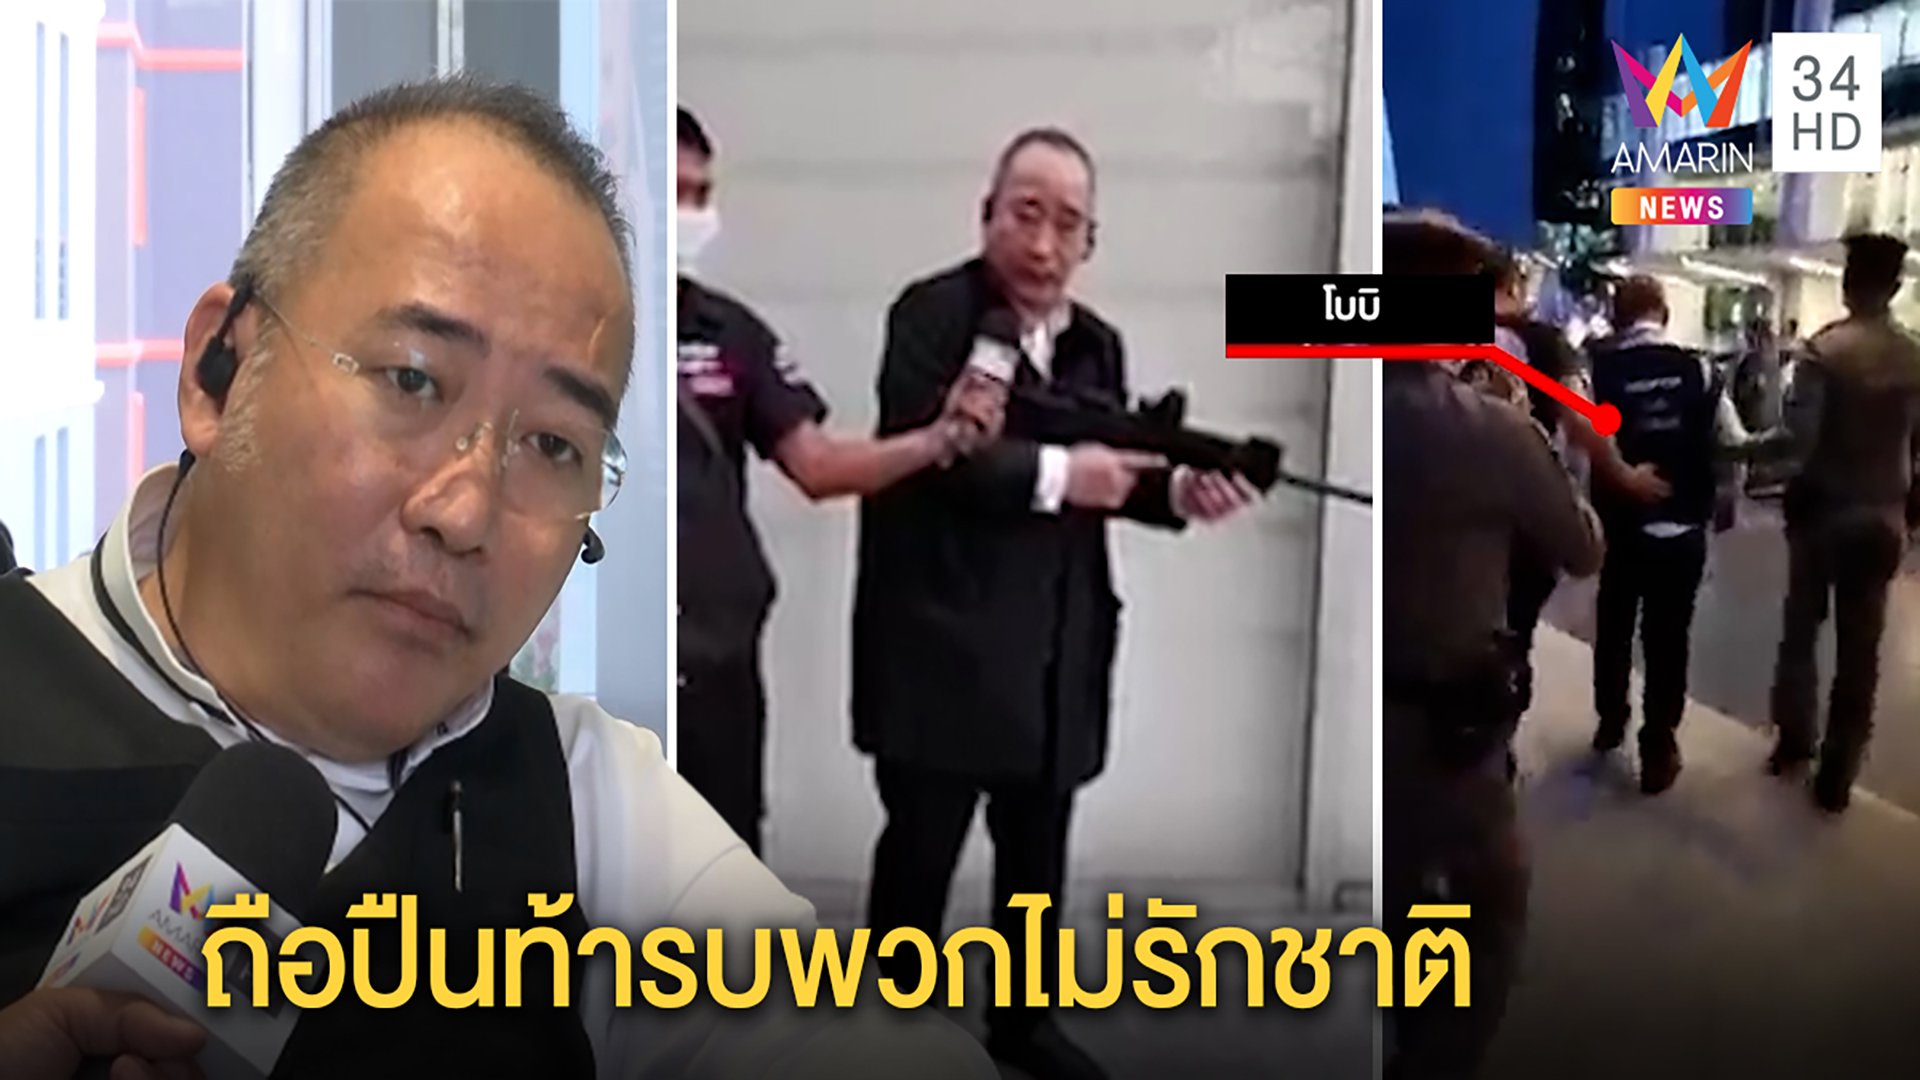 เปิดใจ "โบบิ" ควงปืนเหตุถูกขวางขุดคลองข้ามอ่าวไทย ลั่นพร้อมรบพวกขู่ฆ่า | ทุบโต๊ะข่าว | 22 เม.ย. 64 | AMARIN TVHD34